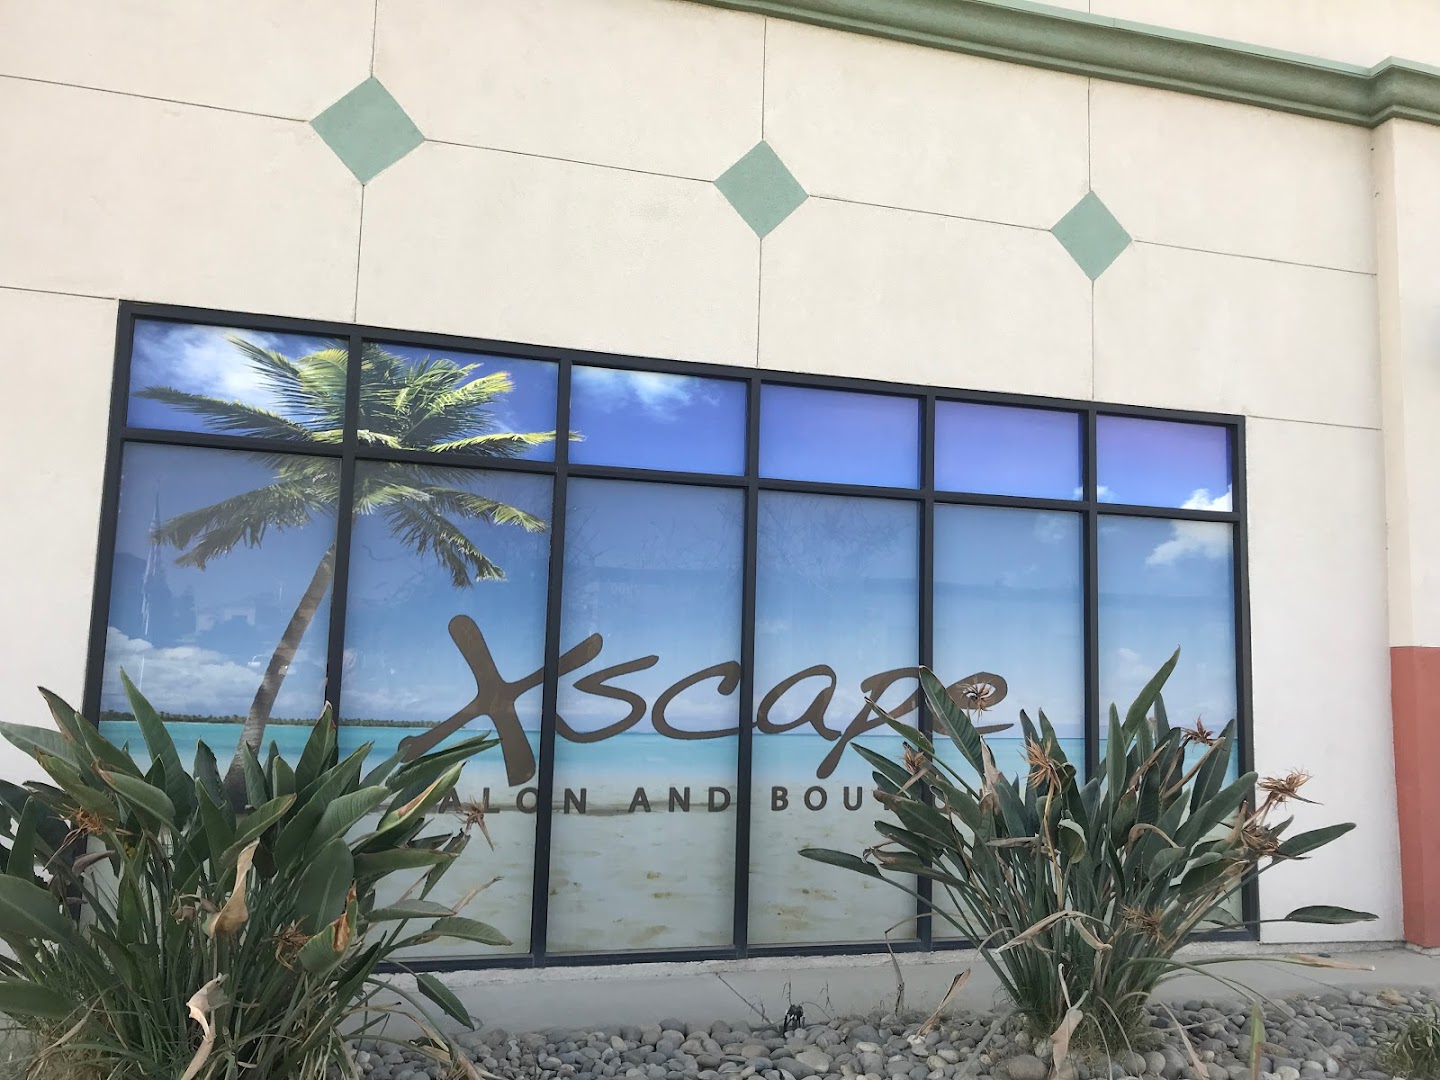 Xscape Salon And Boutique